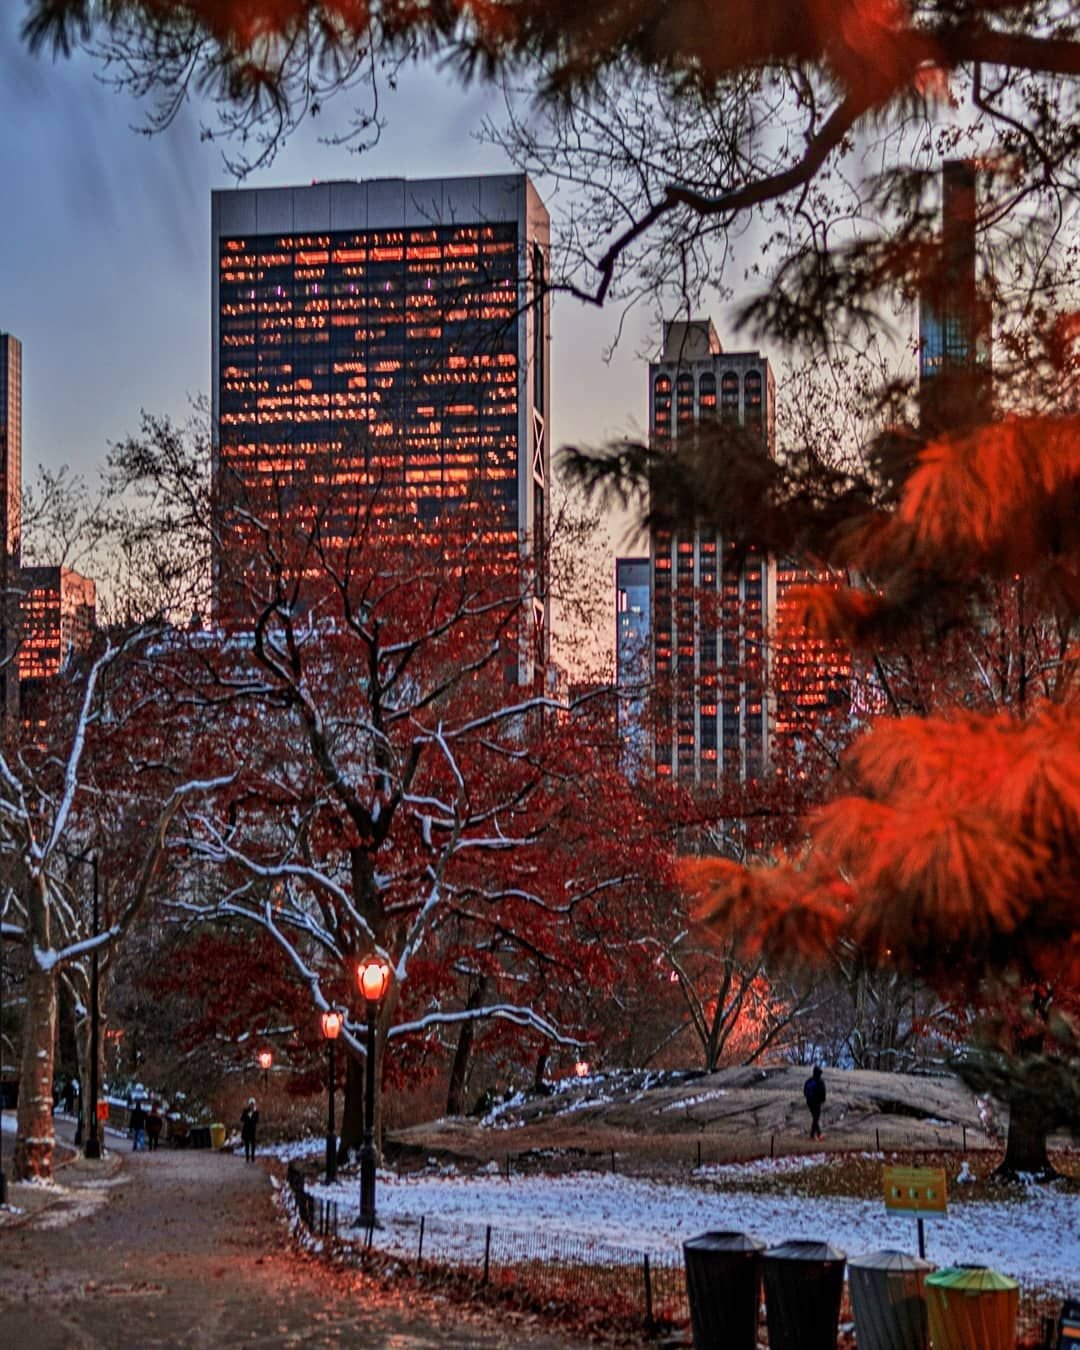 Осень в Нью-Йорке Центральный парк